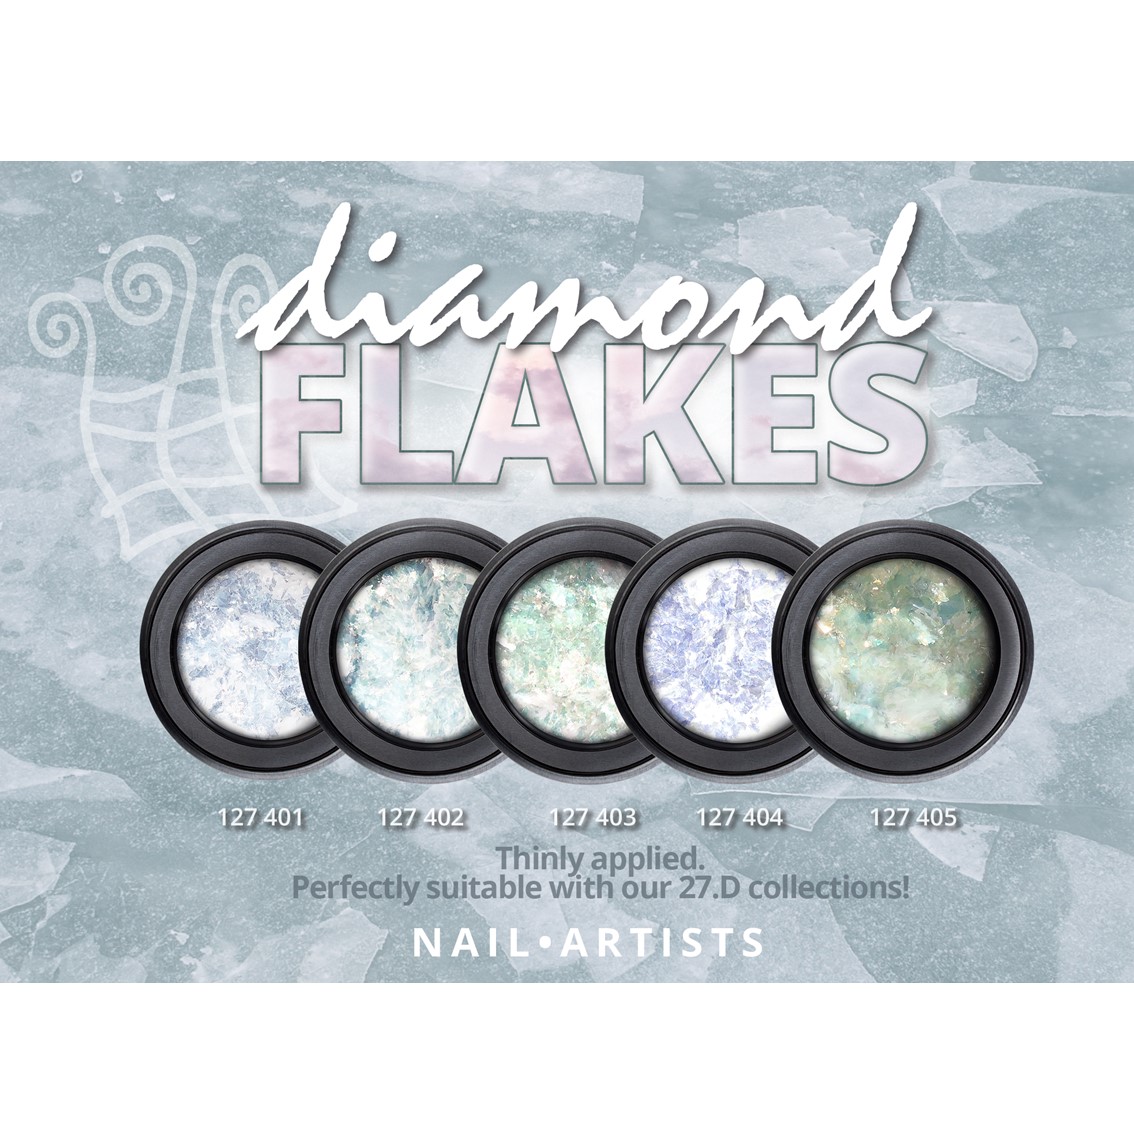 Nail Artists Diamond Flakes 004